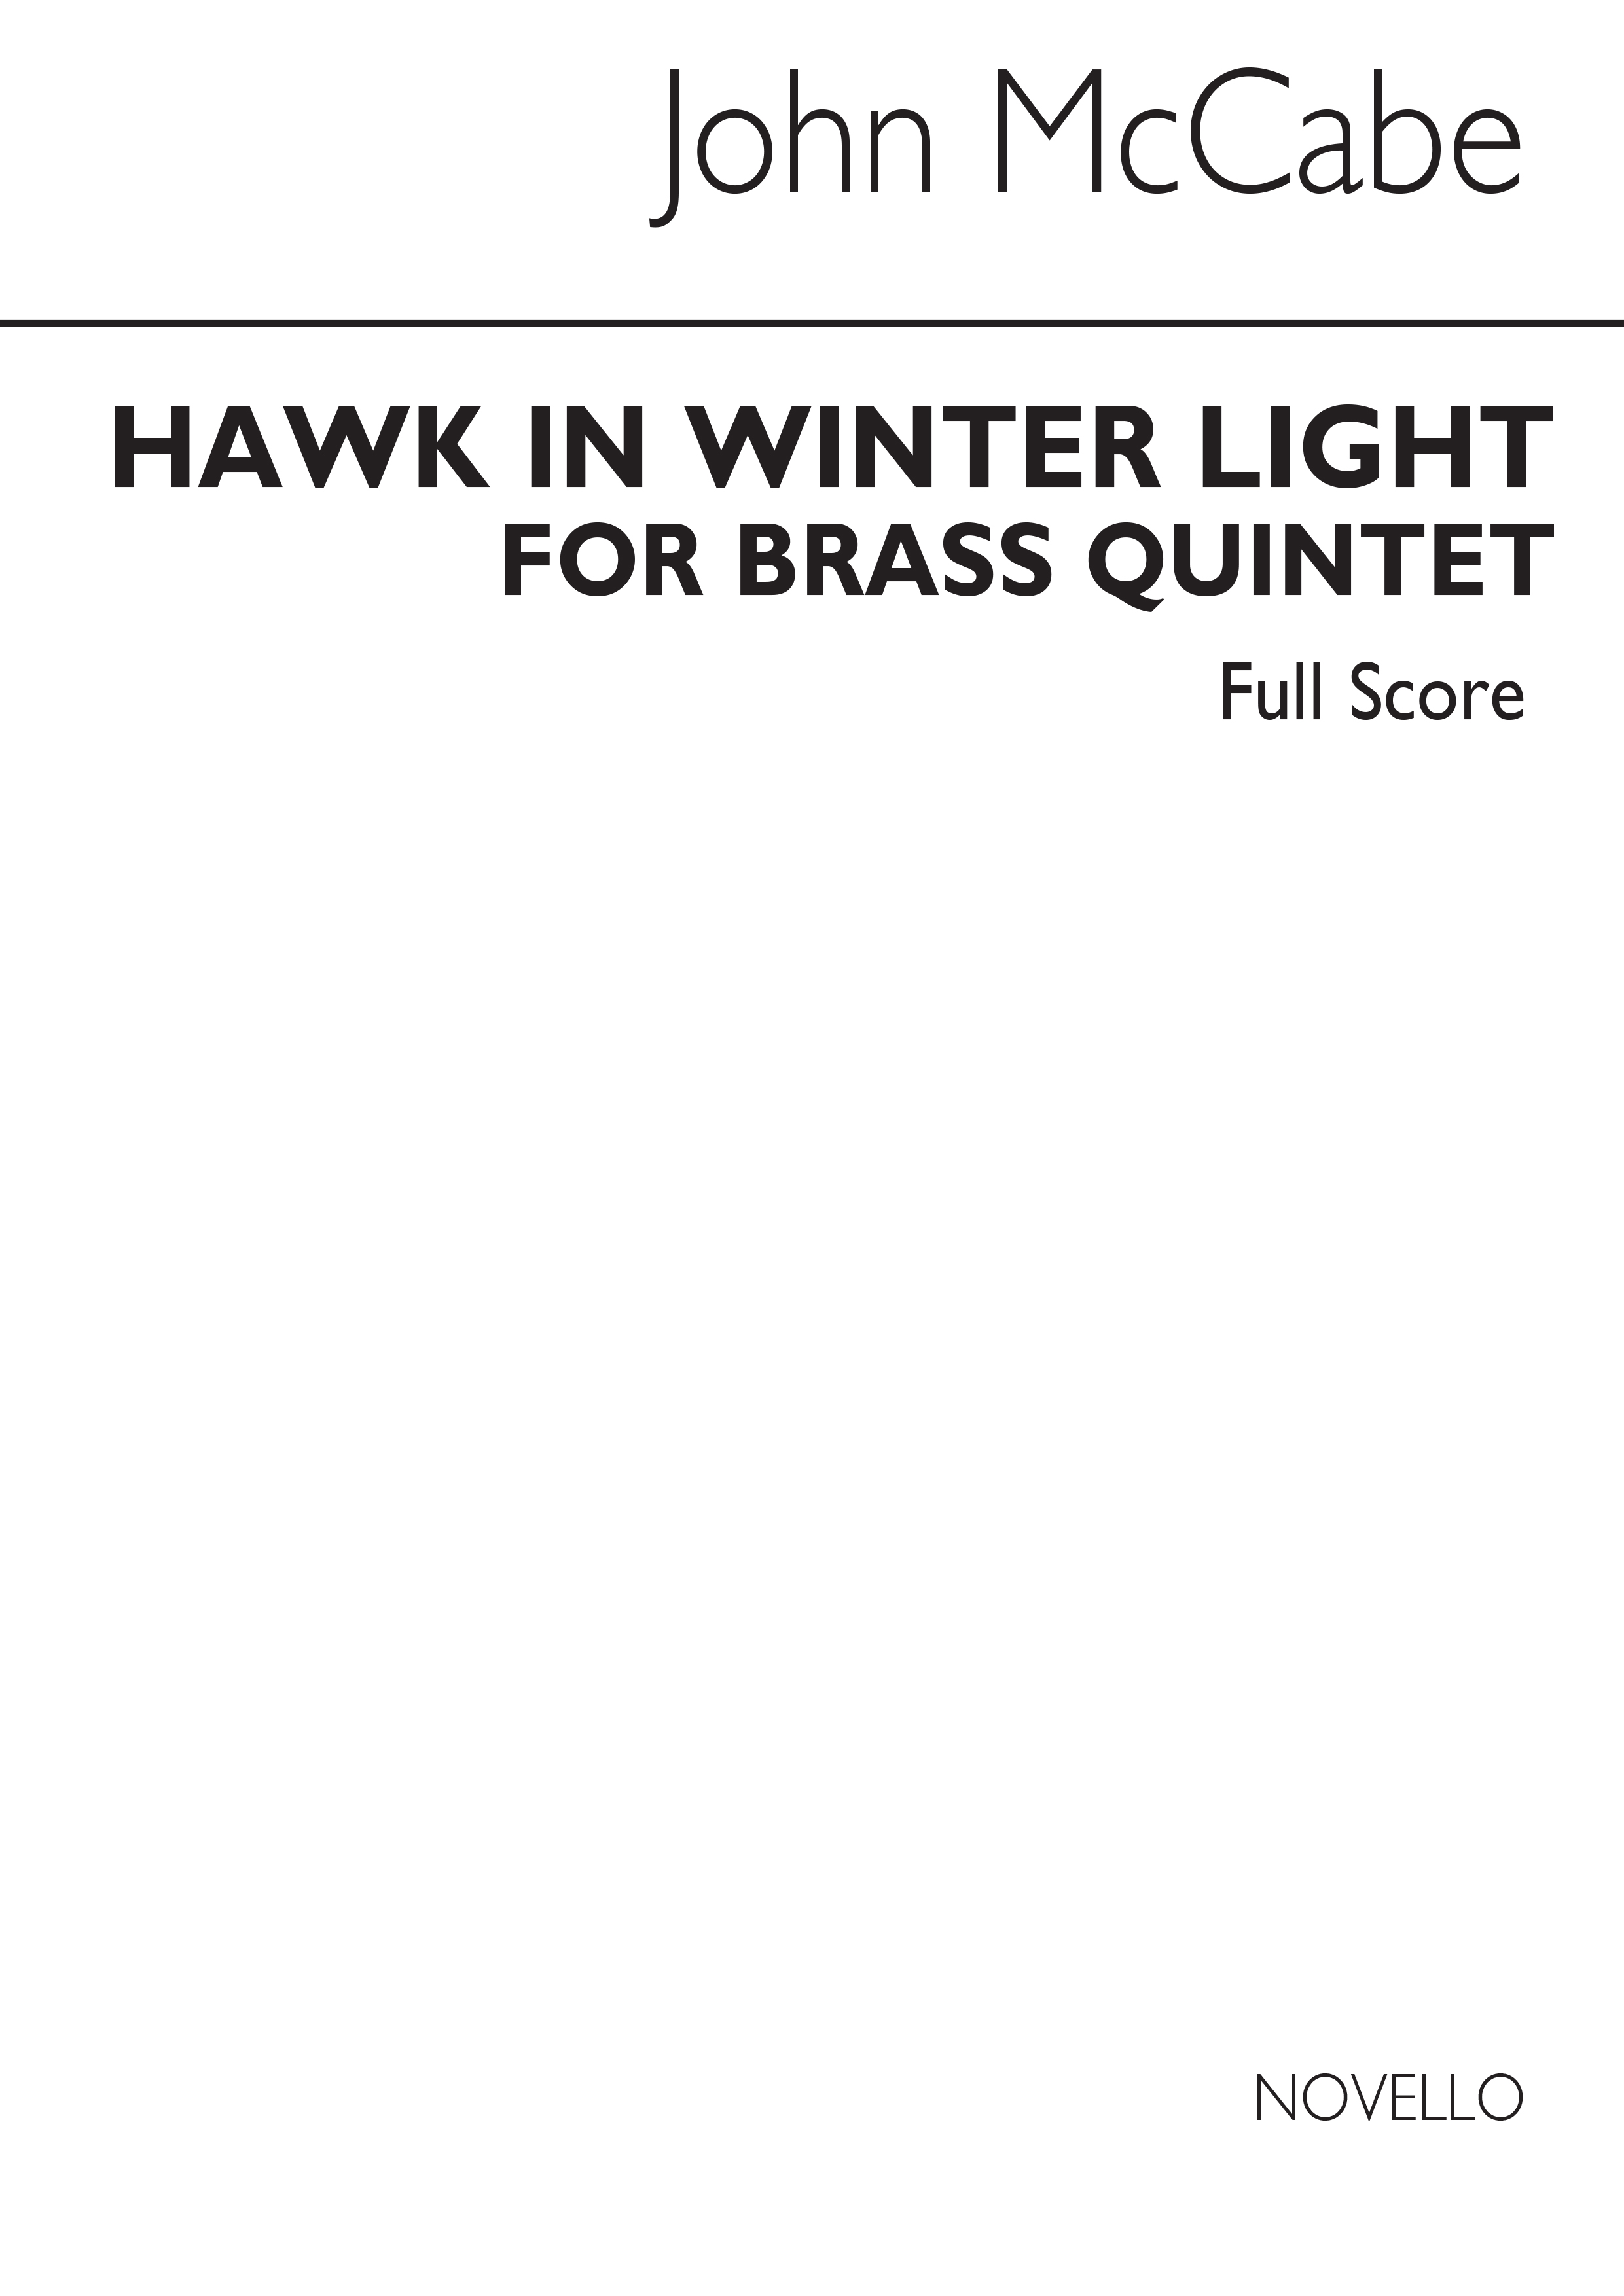 John McCabe: Hawk In Winter Light (Score)